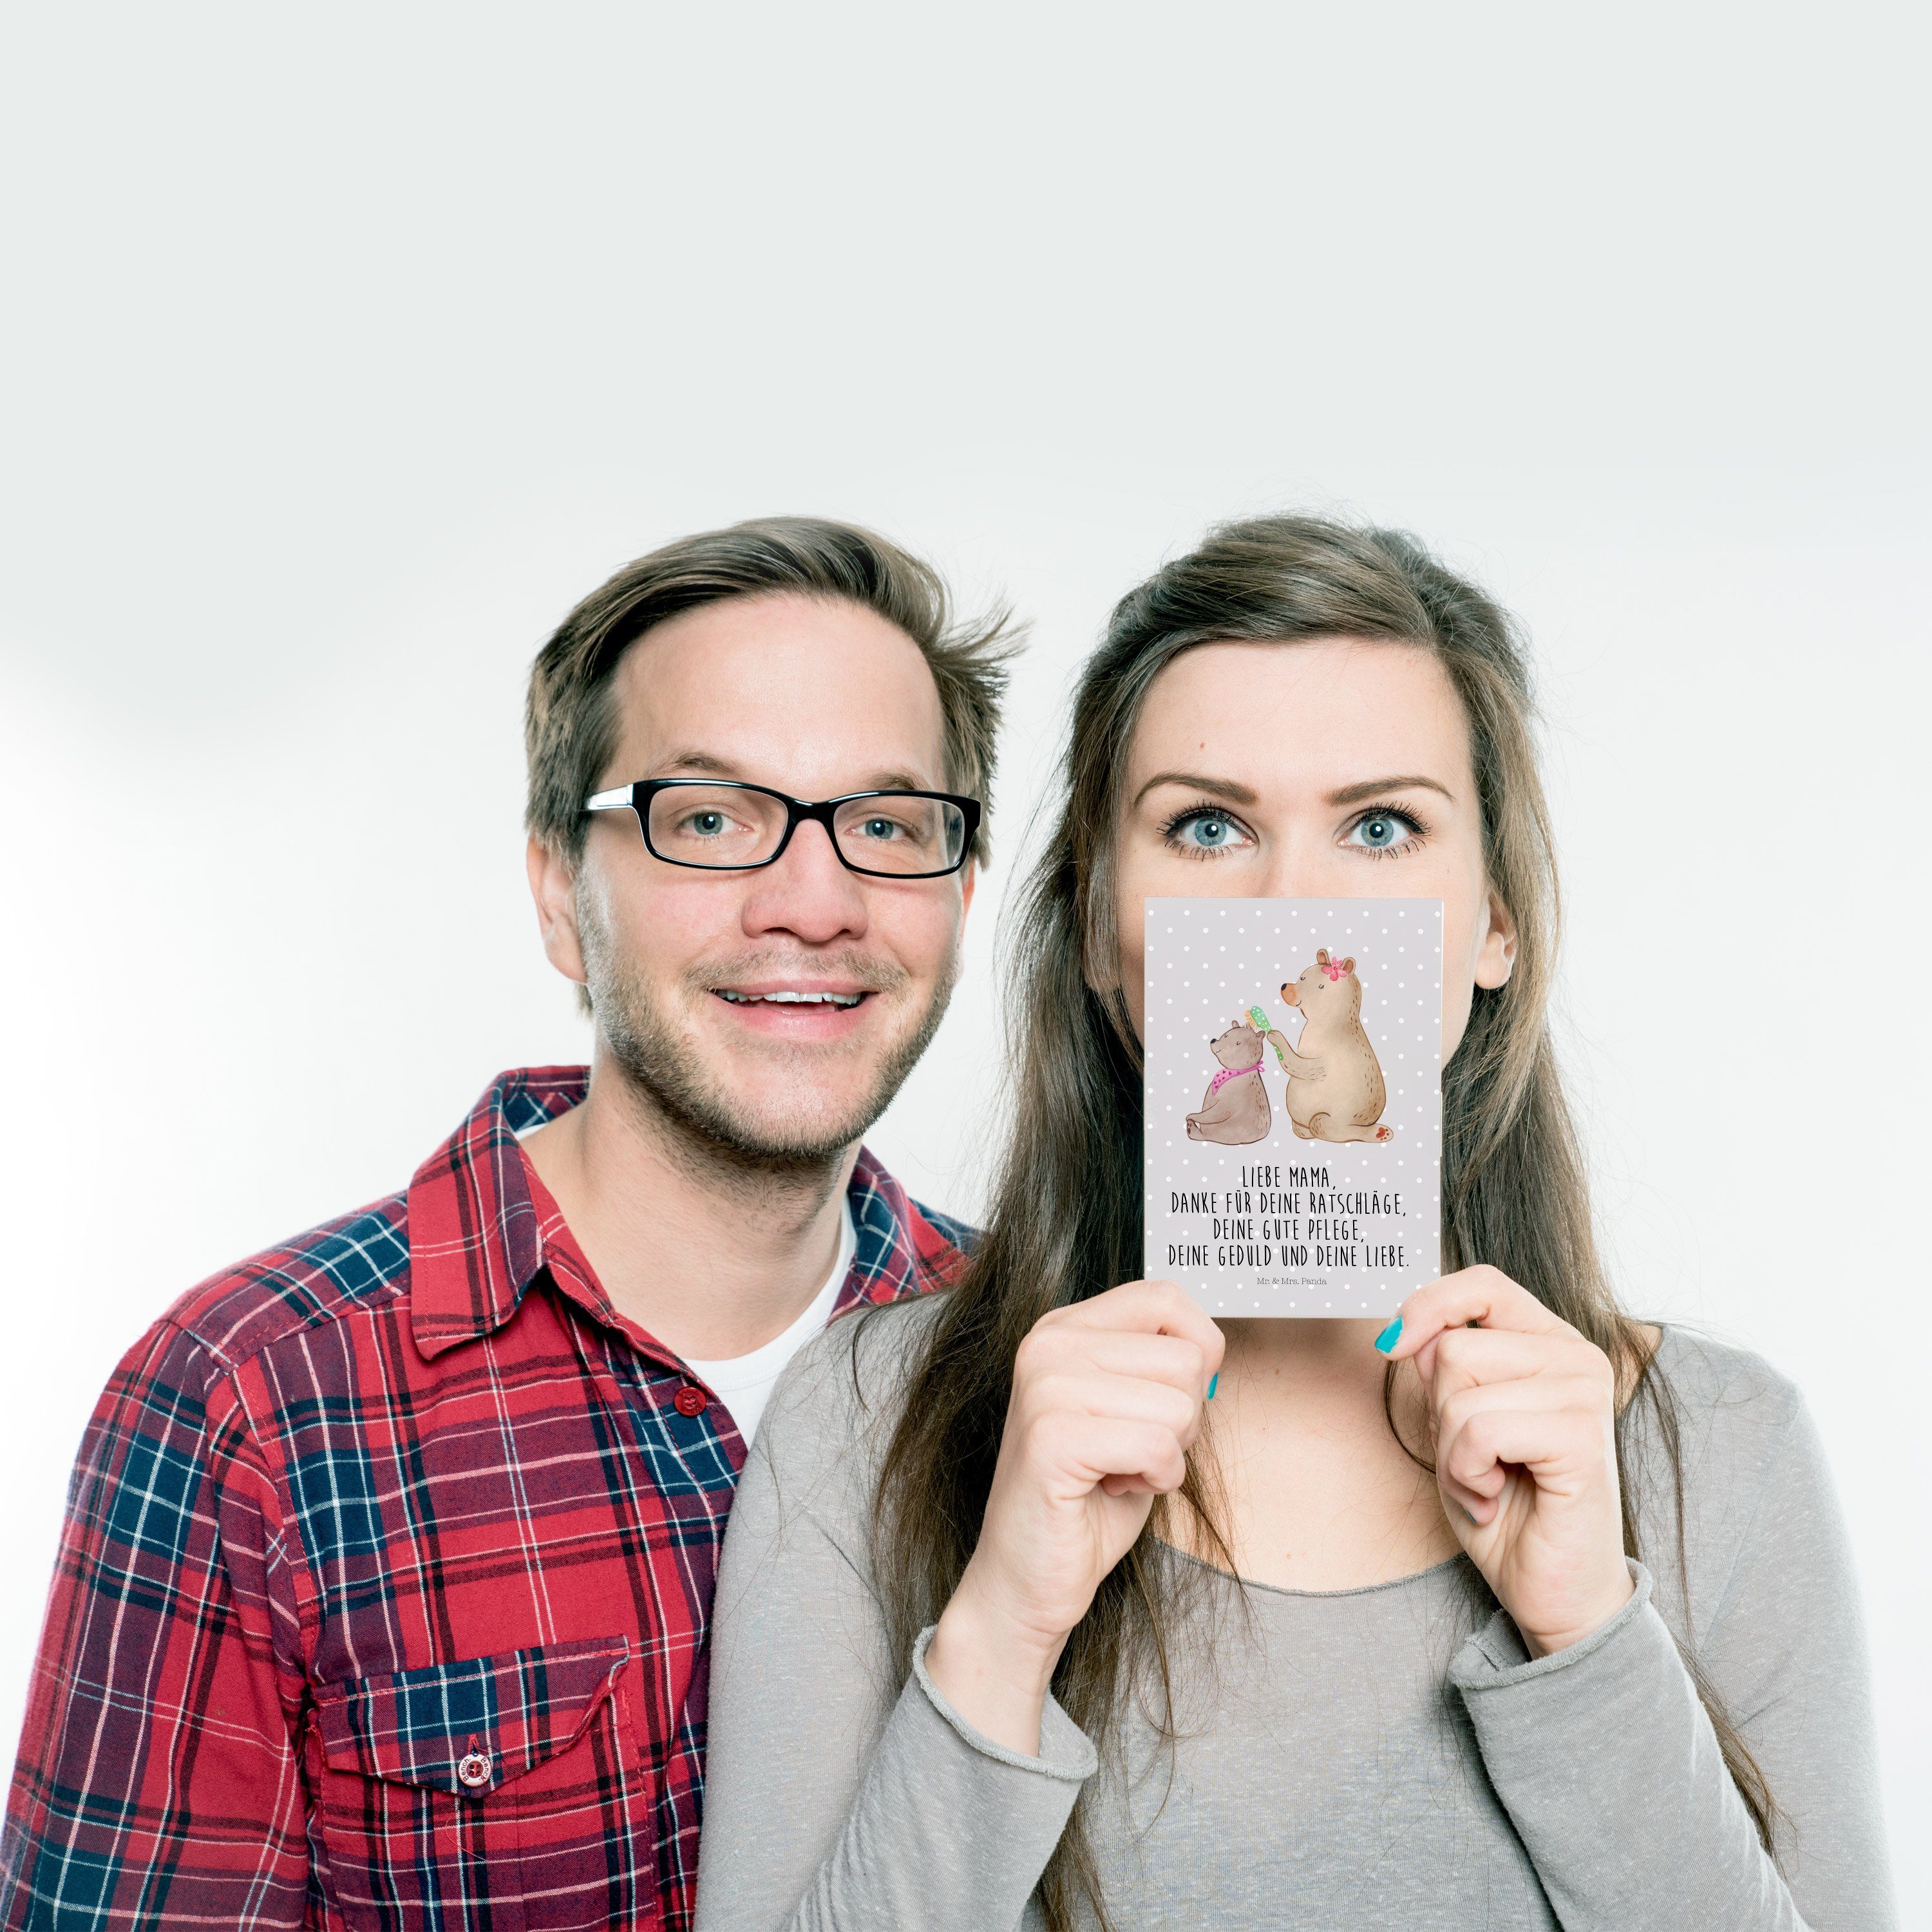 Mr. & Mrs. Panda Grau Ges - Pastell mit - Bär Postkarte Einladungskarte, Geschenk, Kind Familie